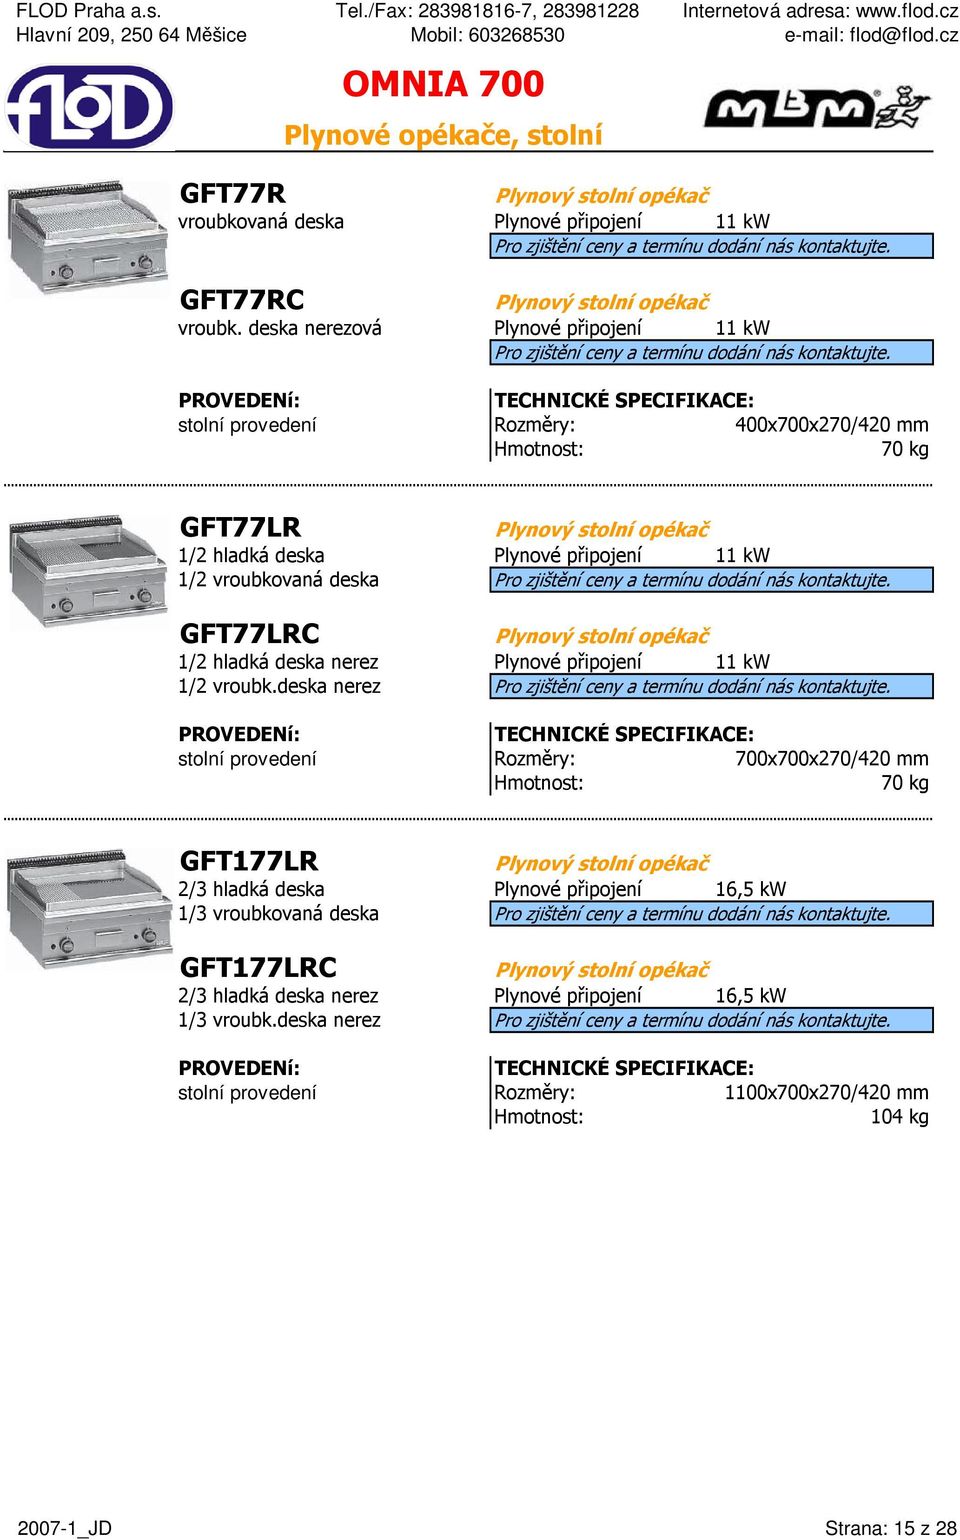 GFT77LRC Plynový stolní opékač 1/2 hladká deska nerez Plynové připojení 11 kw 1/2 vroubk.